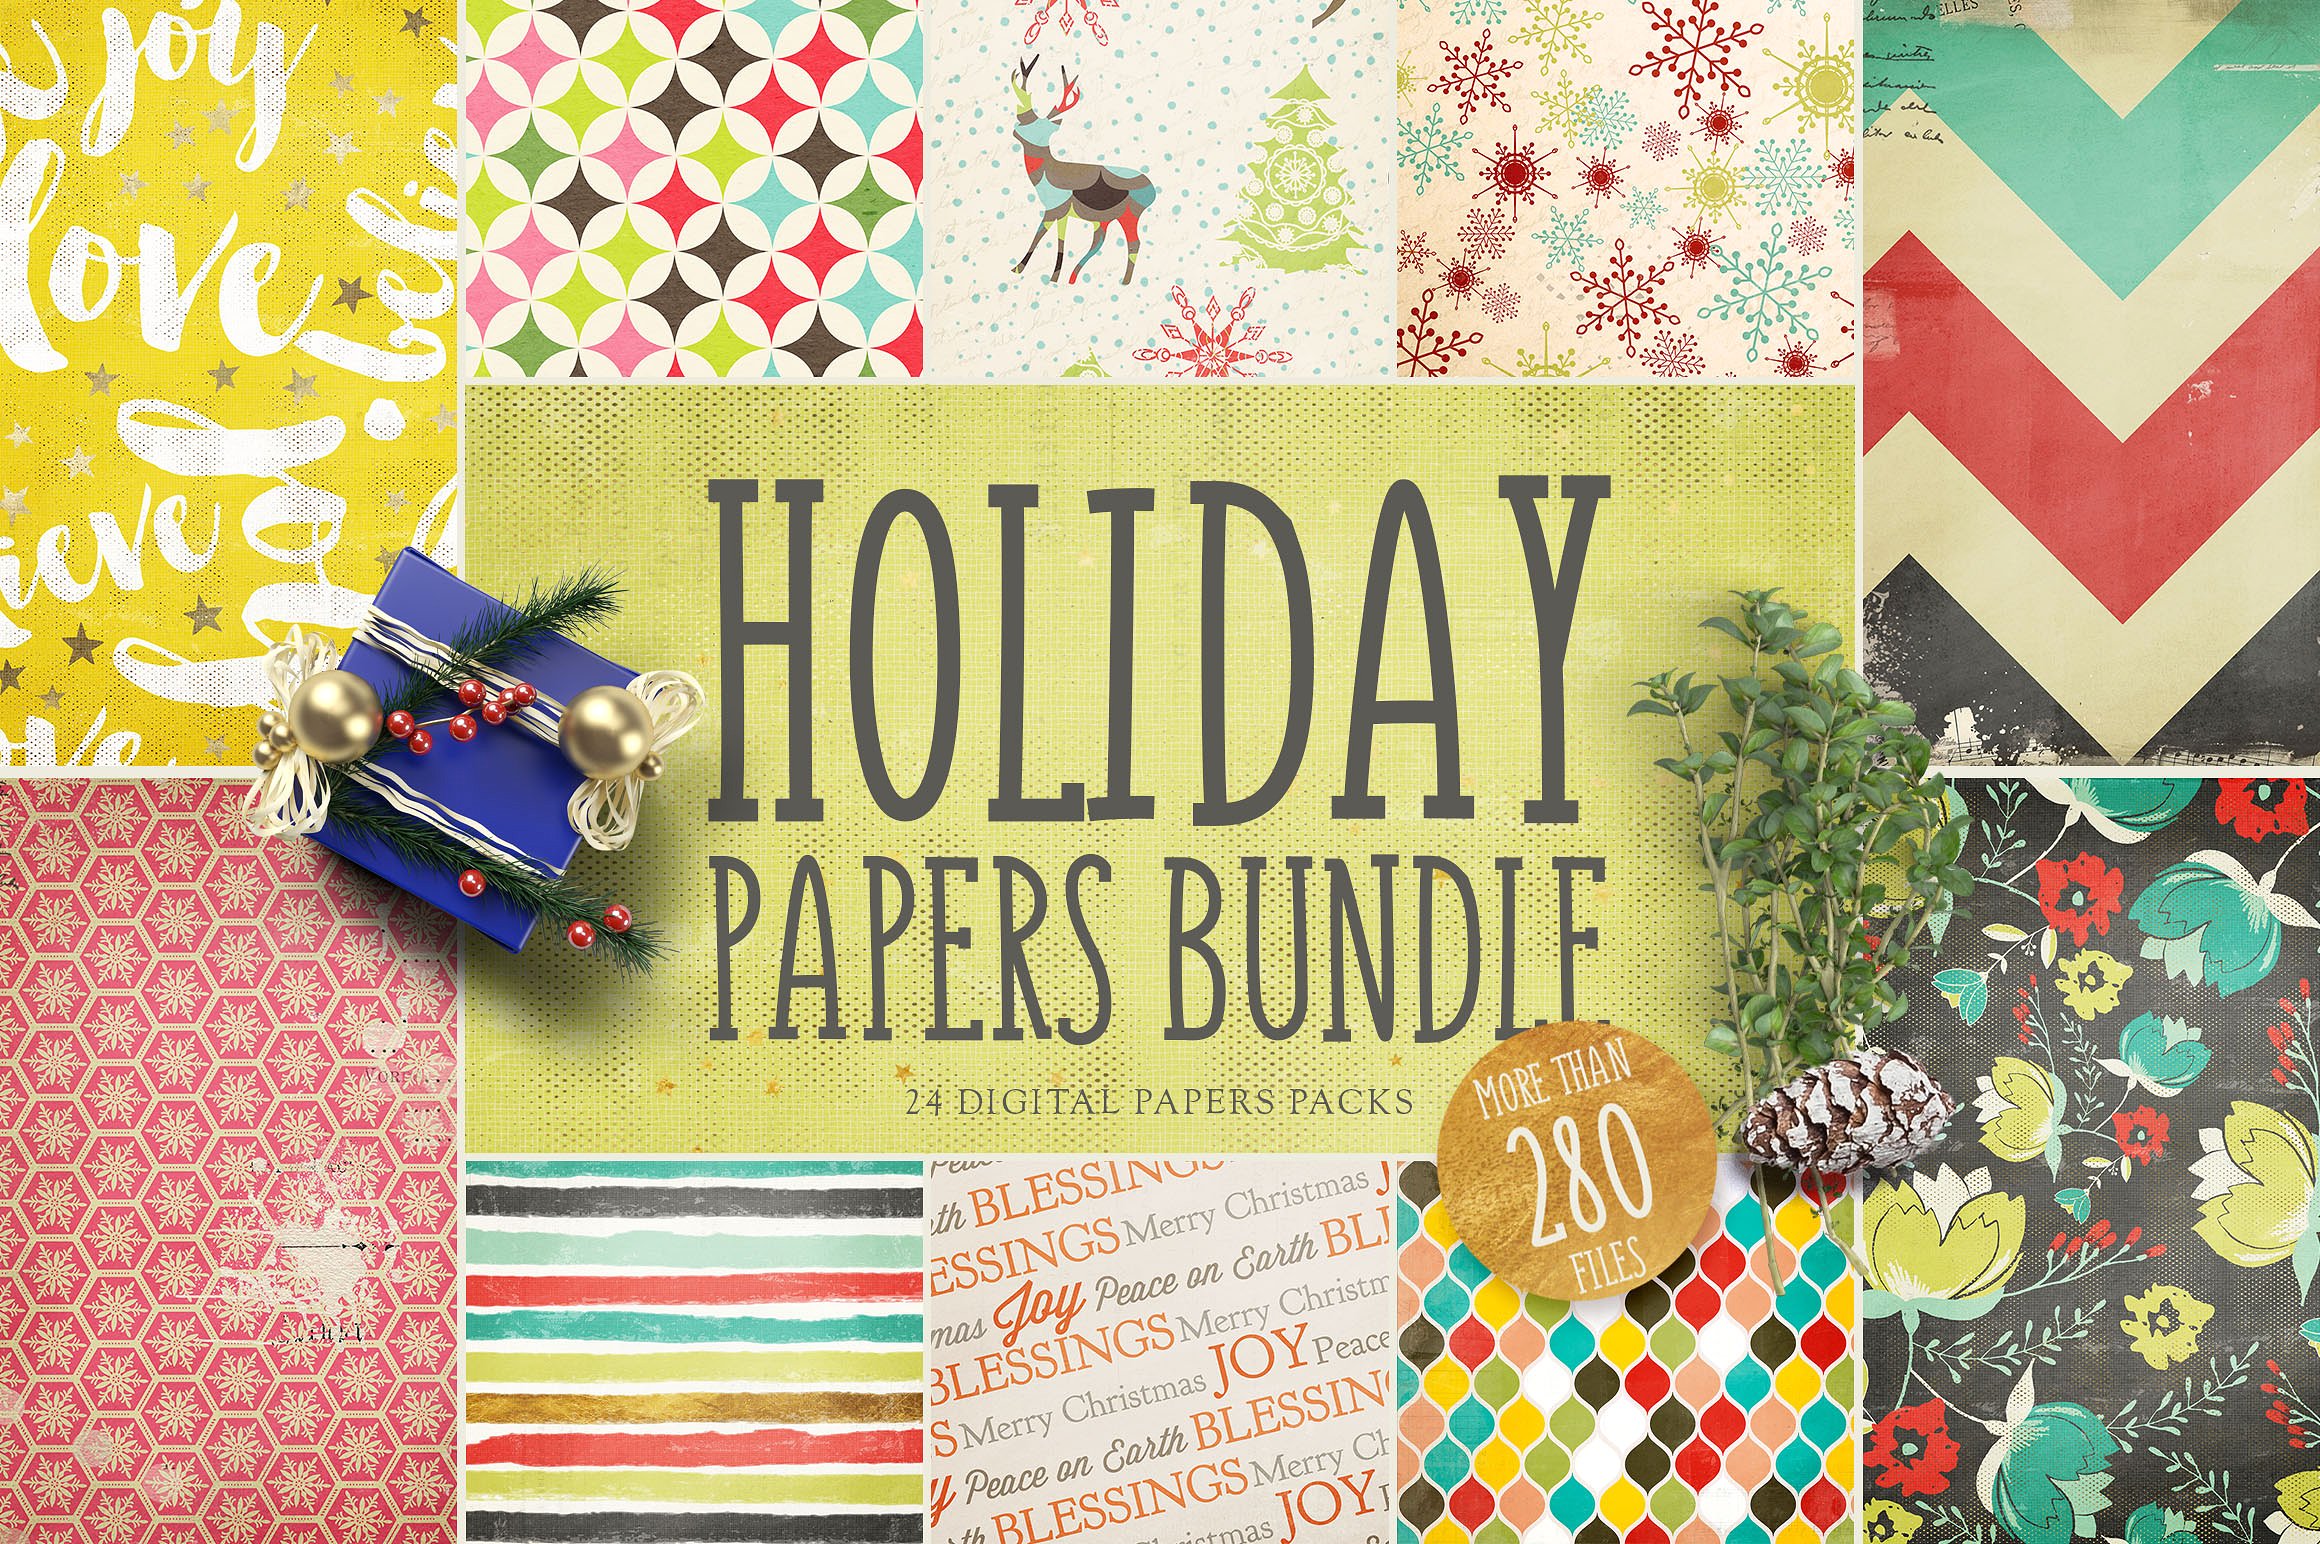 节日氛围数码纸张礼品包装纸张纹理合集 Holiday Digital Papers Bundle插图